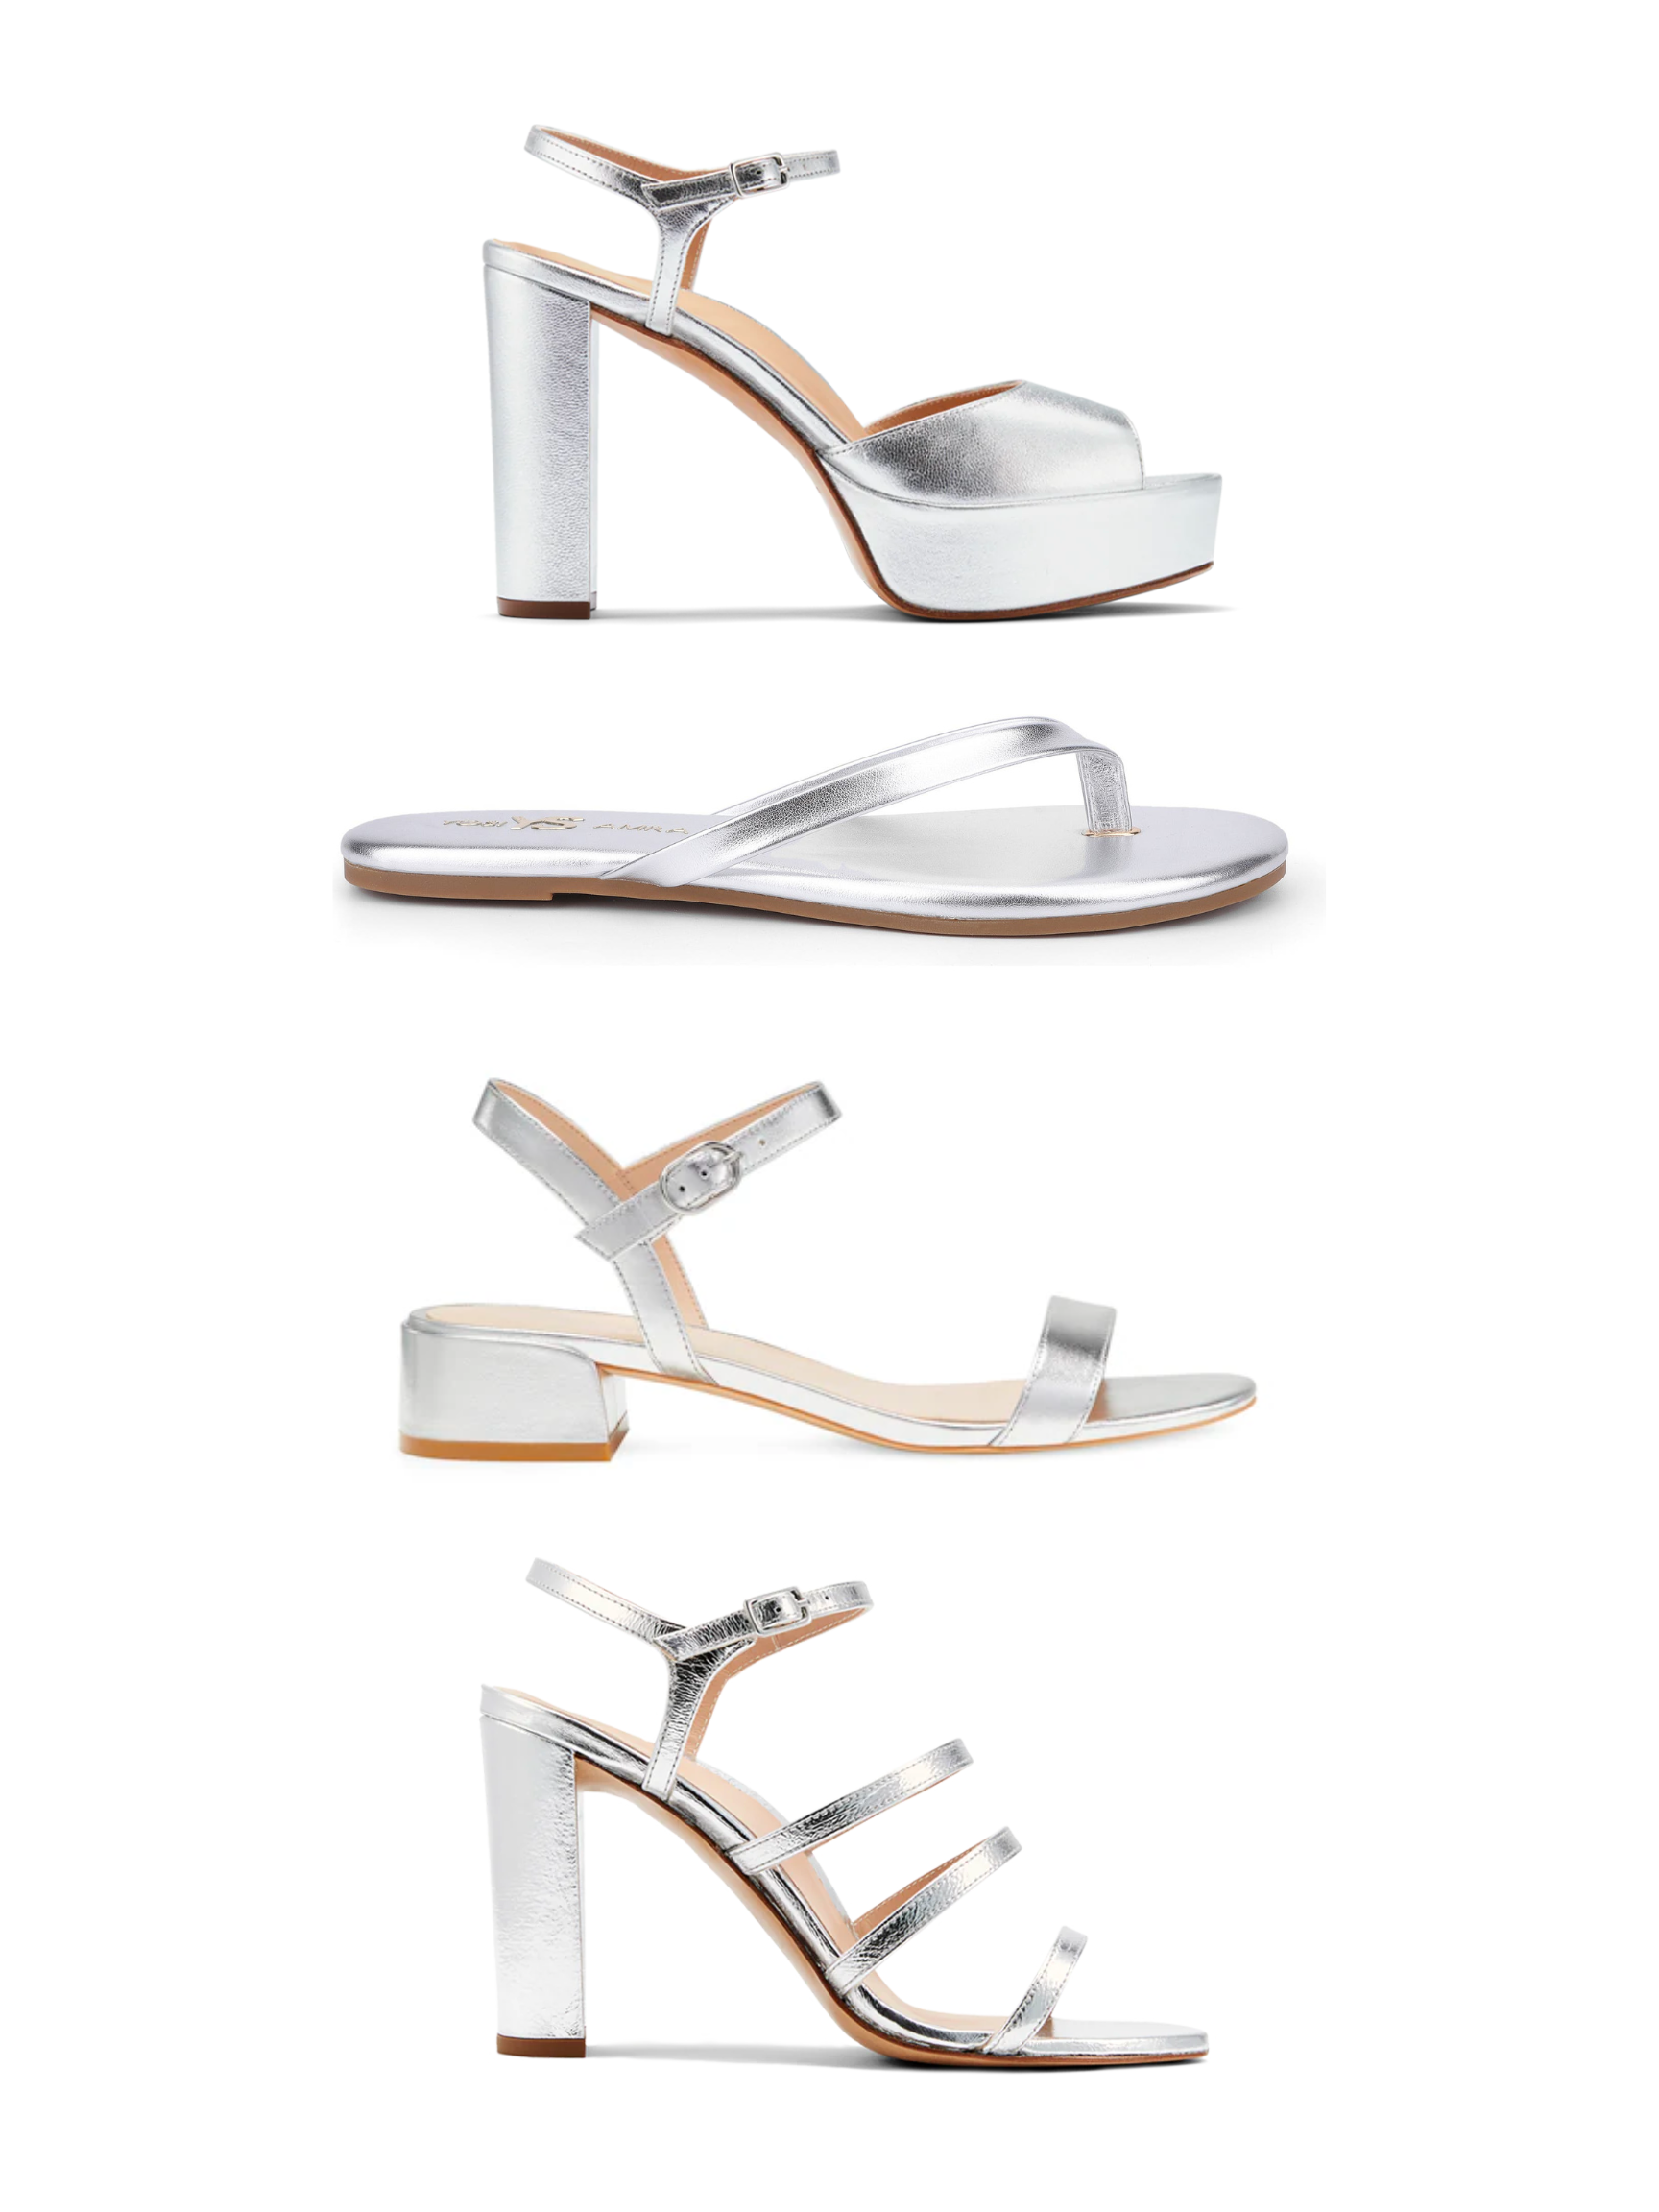 best silver metallic heels and best silver metallic sandals